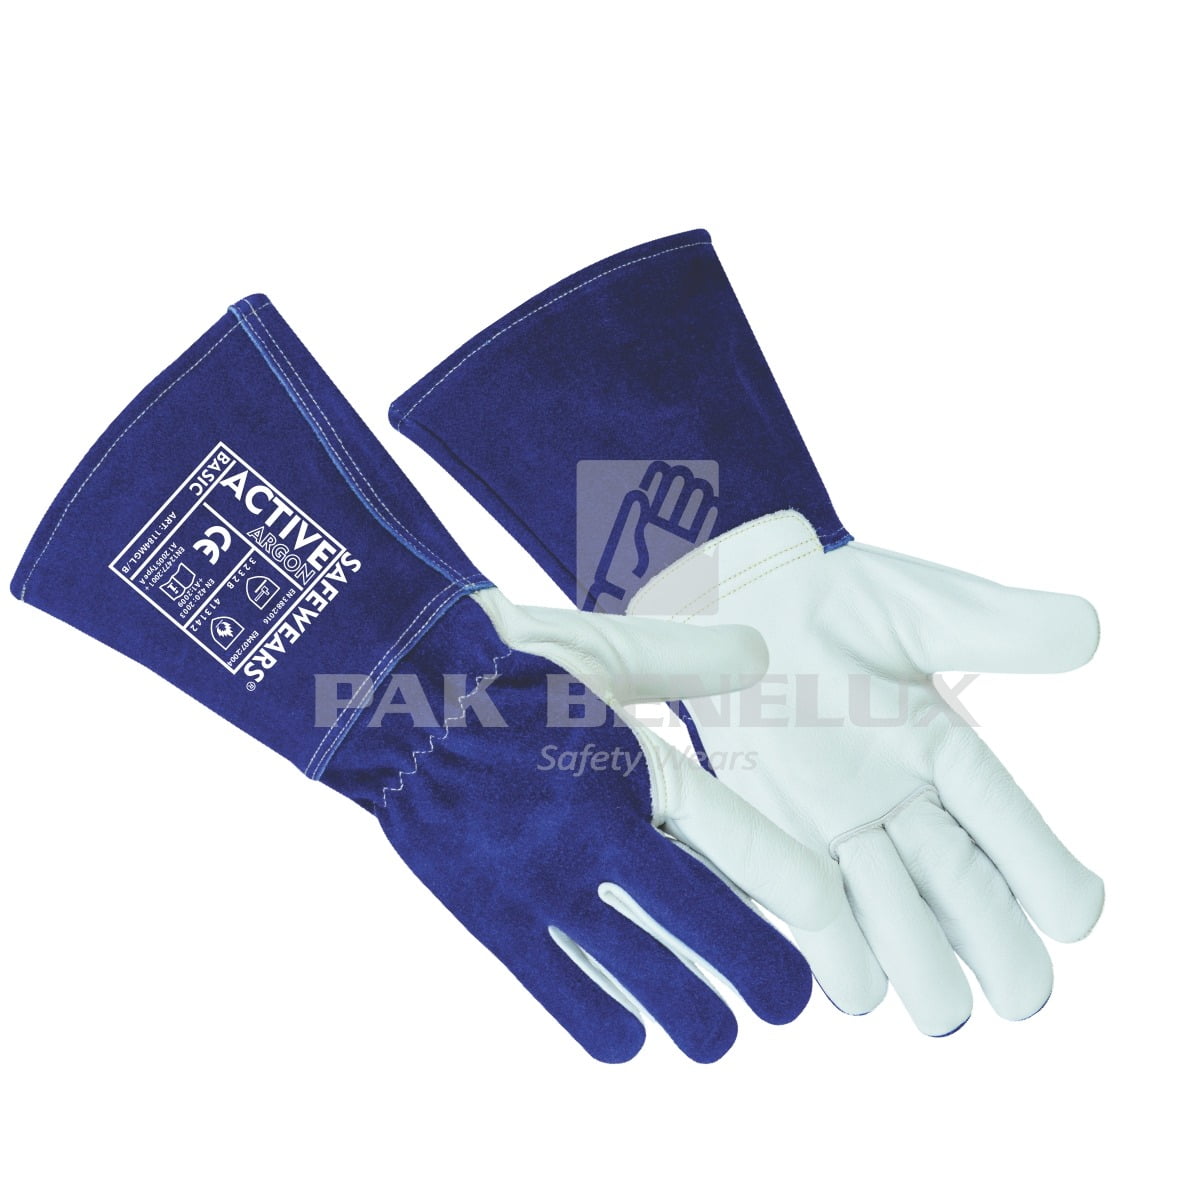 Argon Gloves Manufacturer in Pakistan